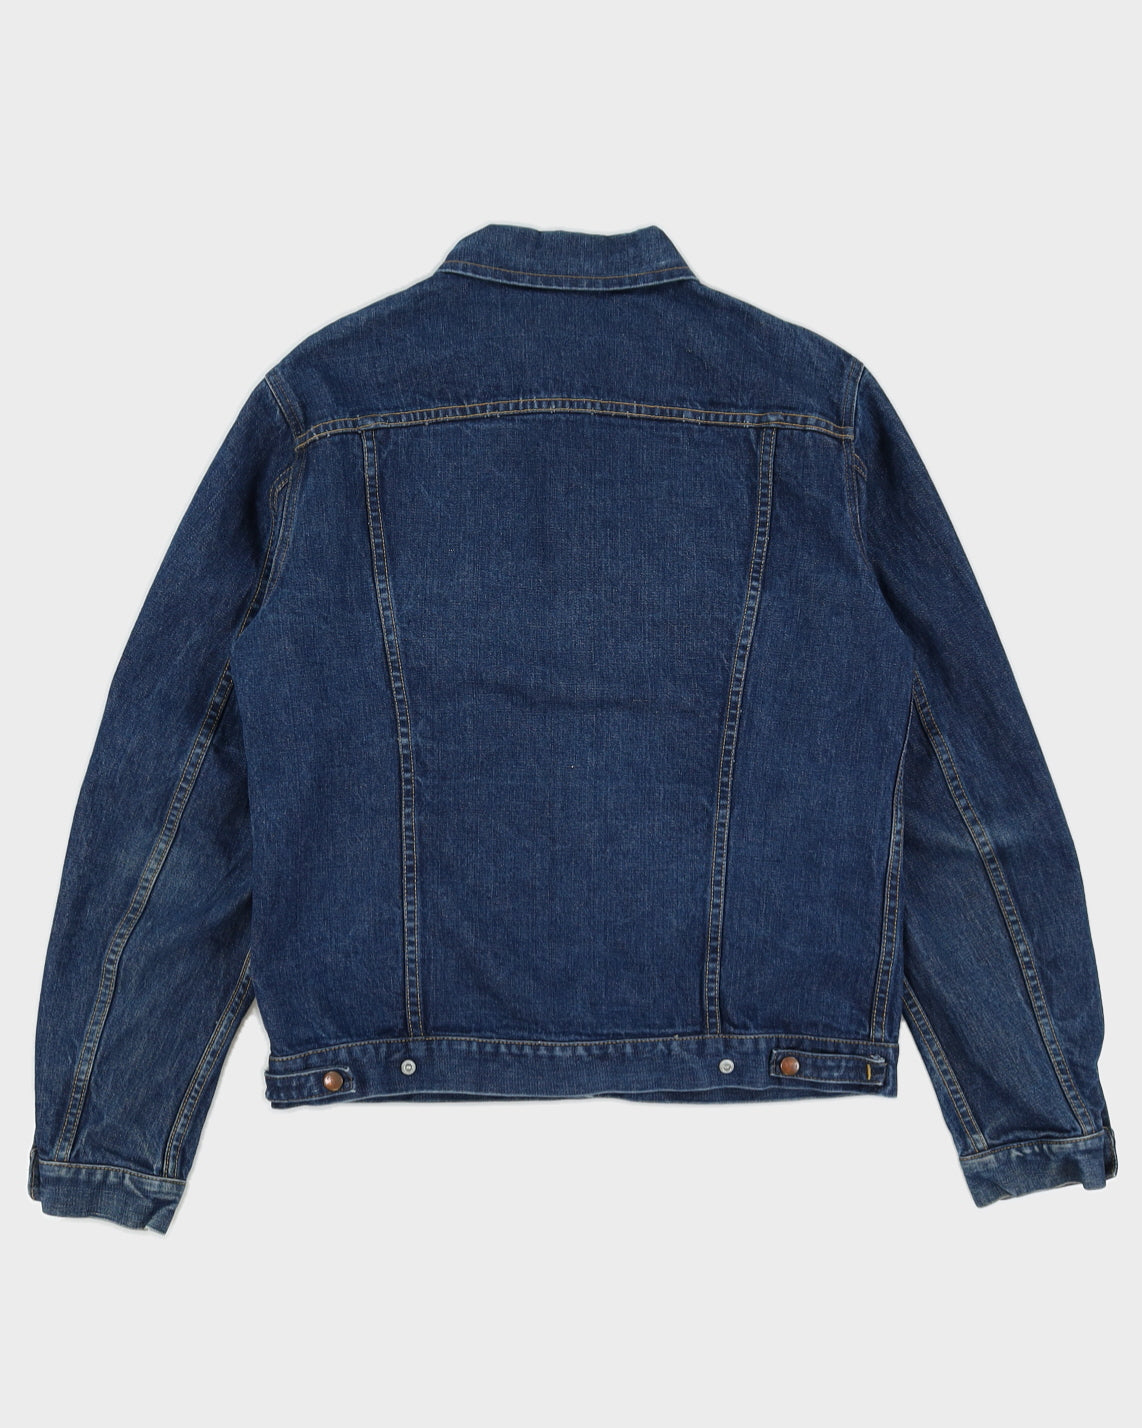 Vintage 70s GWG Dark Wash Denim Jacket - L